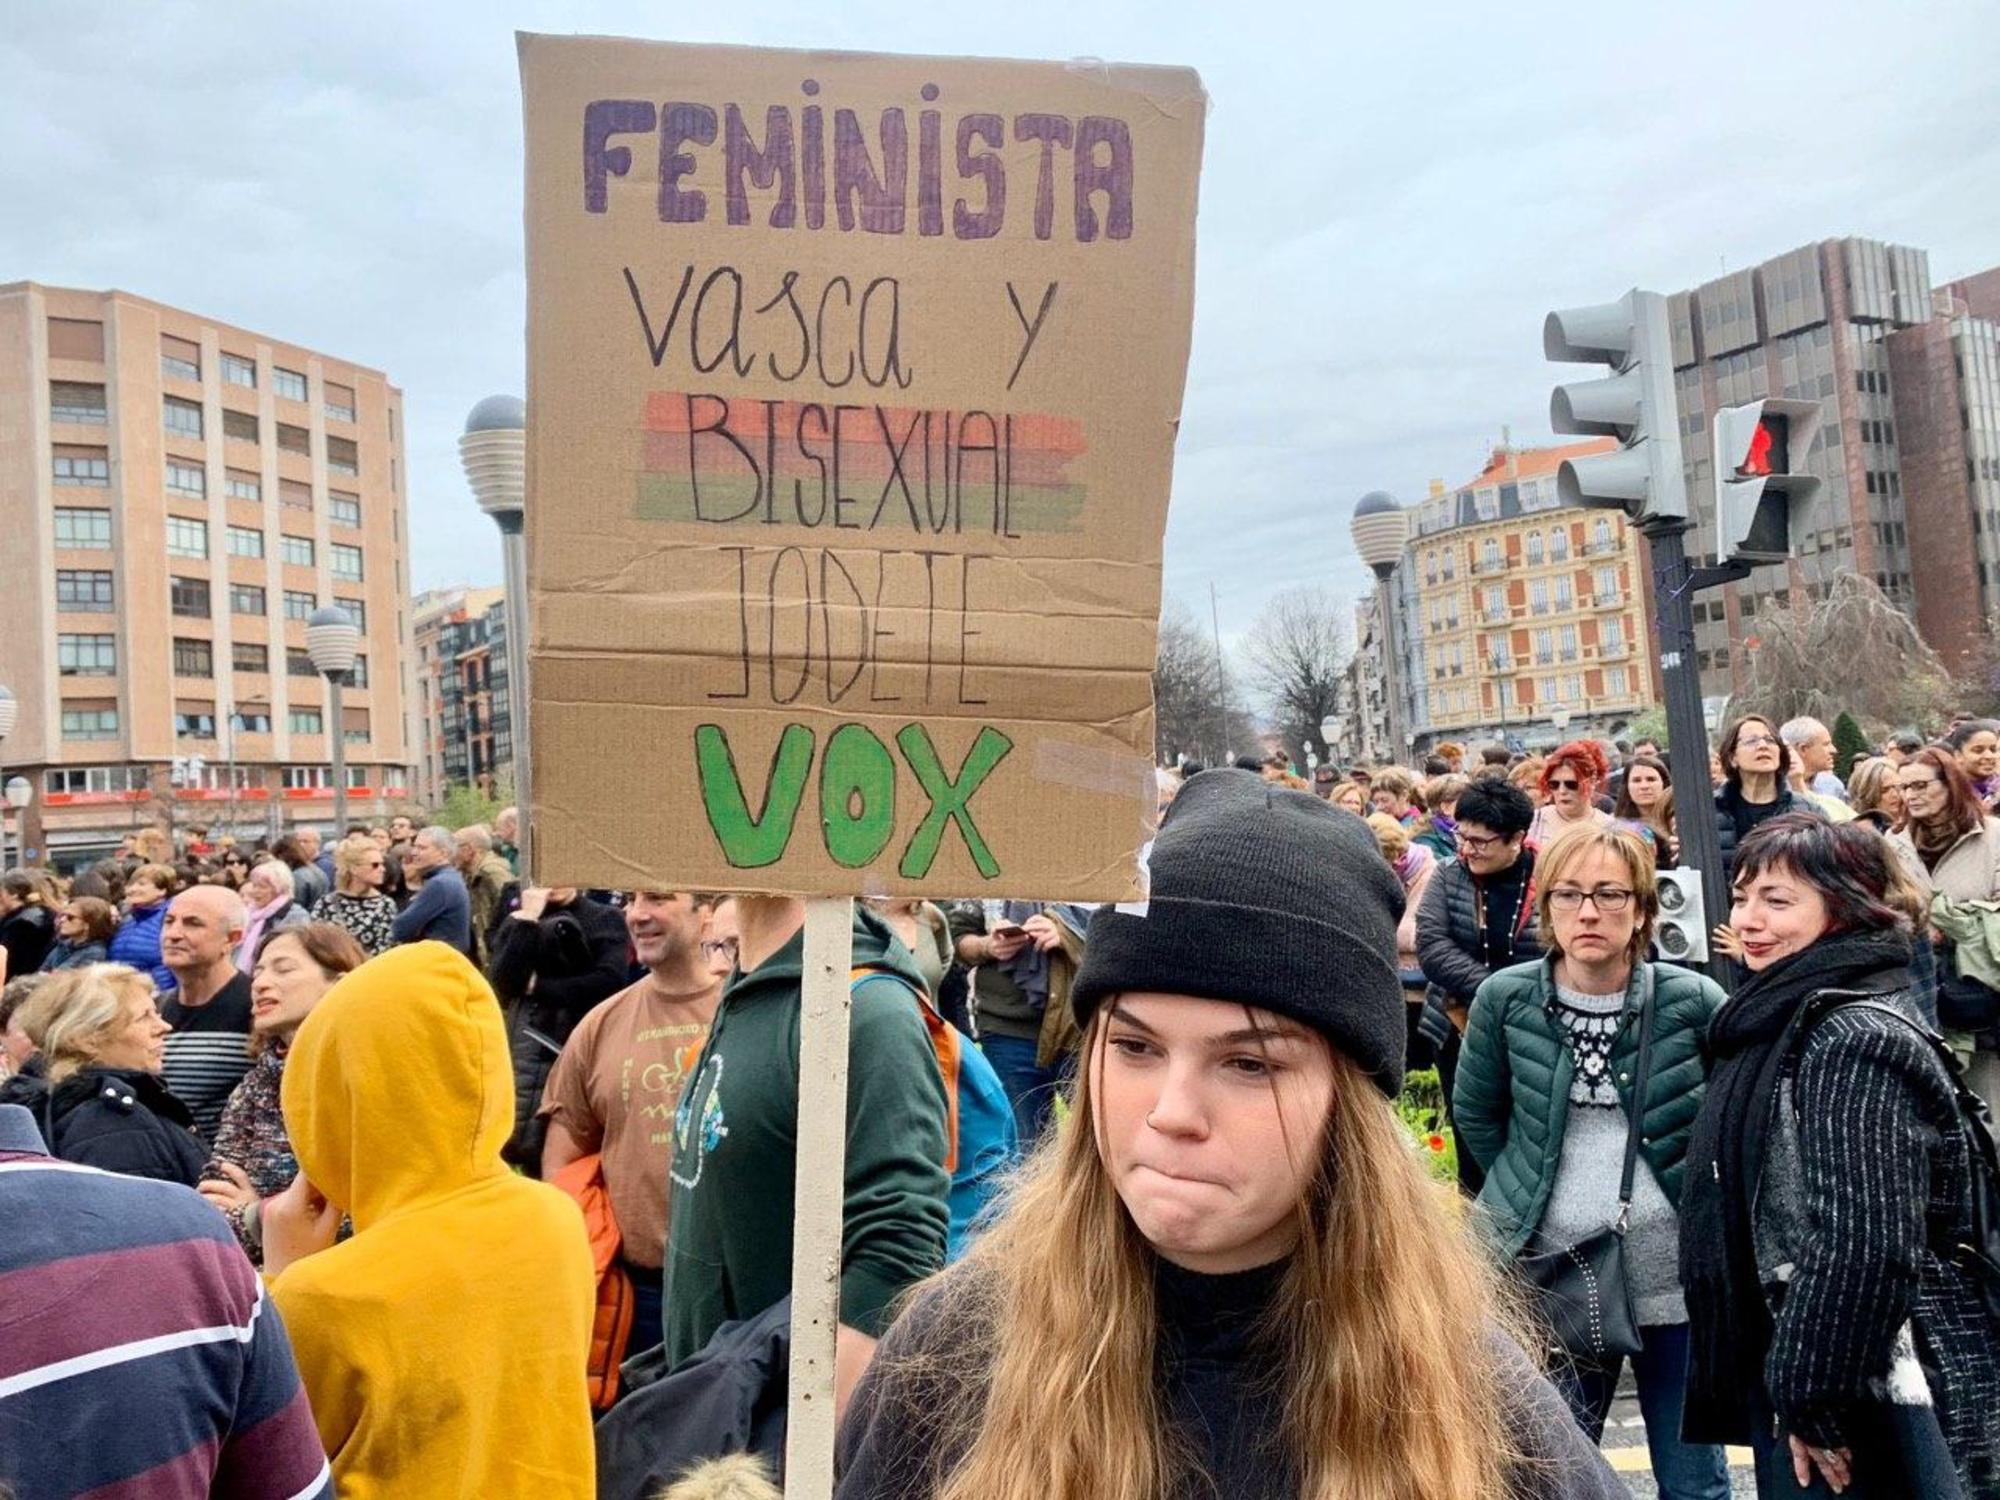 “Feminista, vasca y bisexual: jódete Vox”